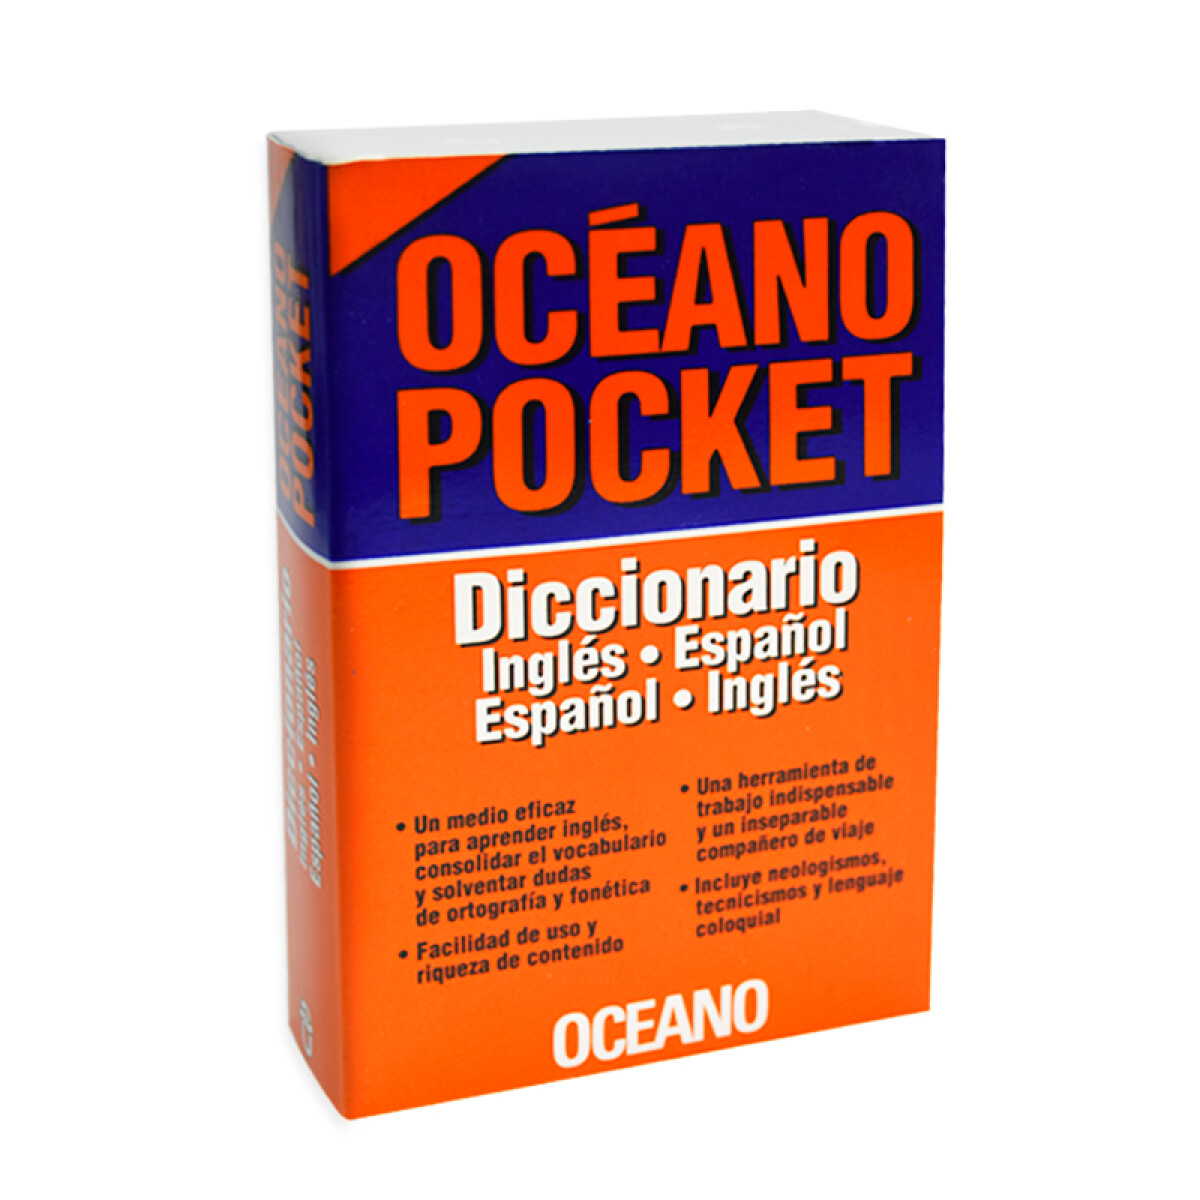 Diccionario OCEANO Español-Ingles Pocket 